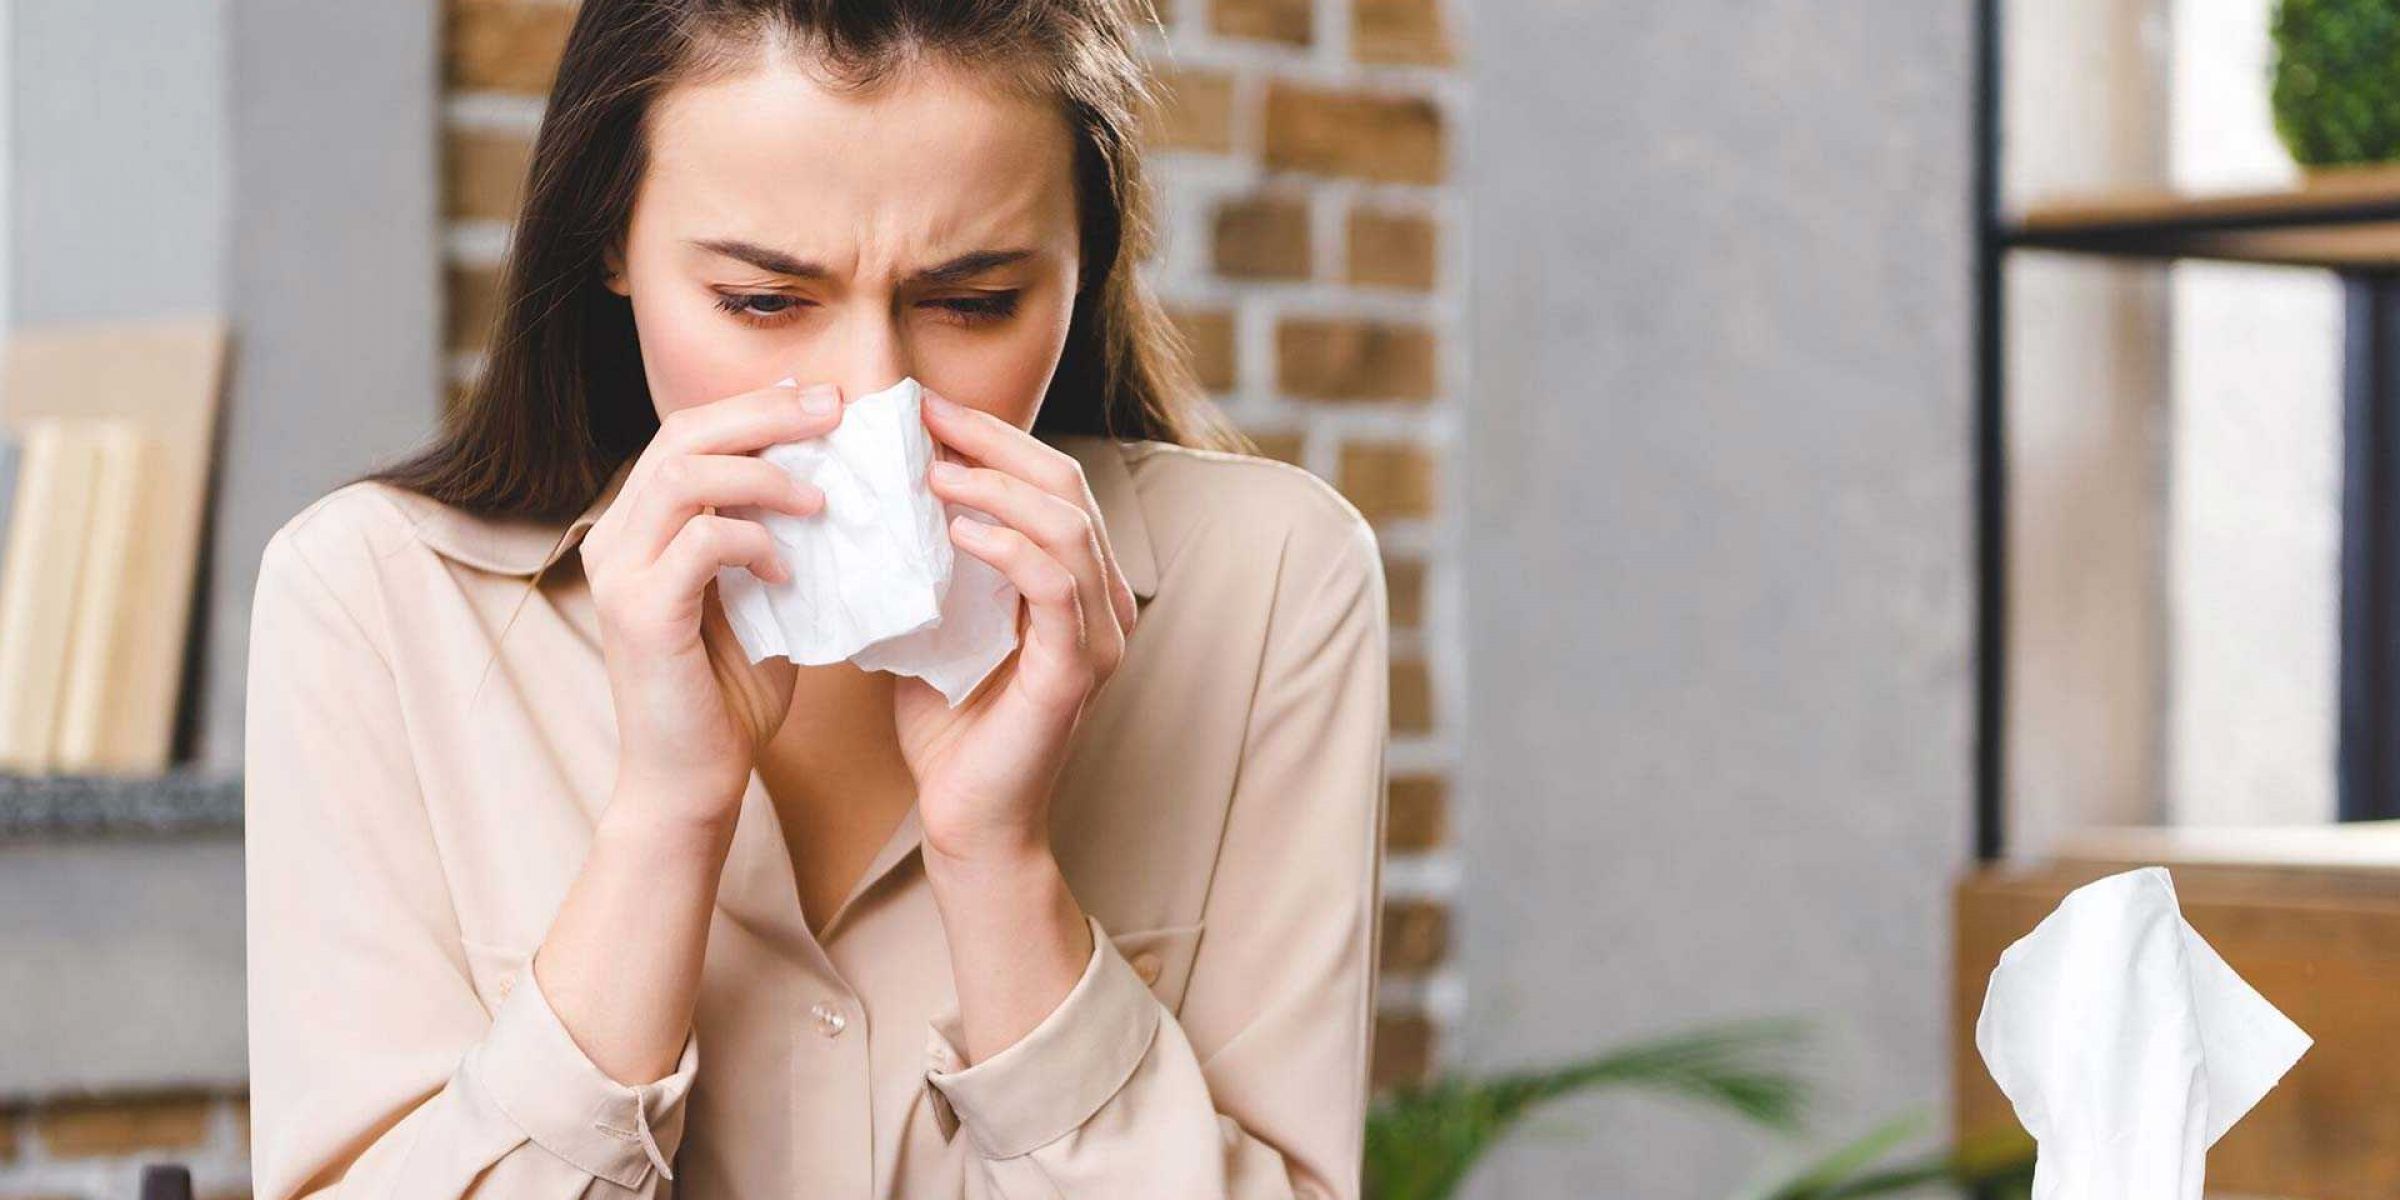 Аллергия на пыль: что делать, и кто виноват?